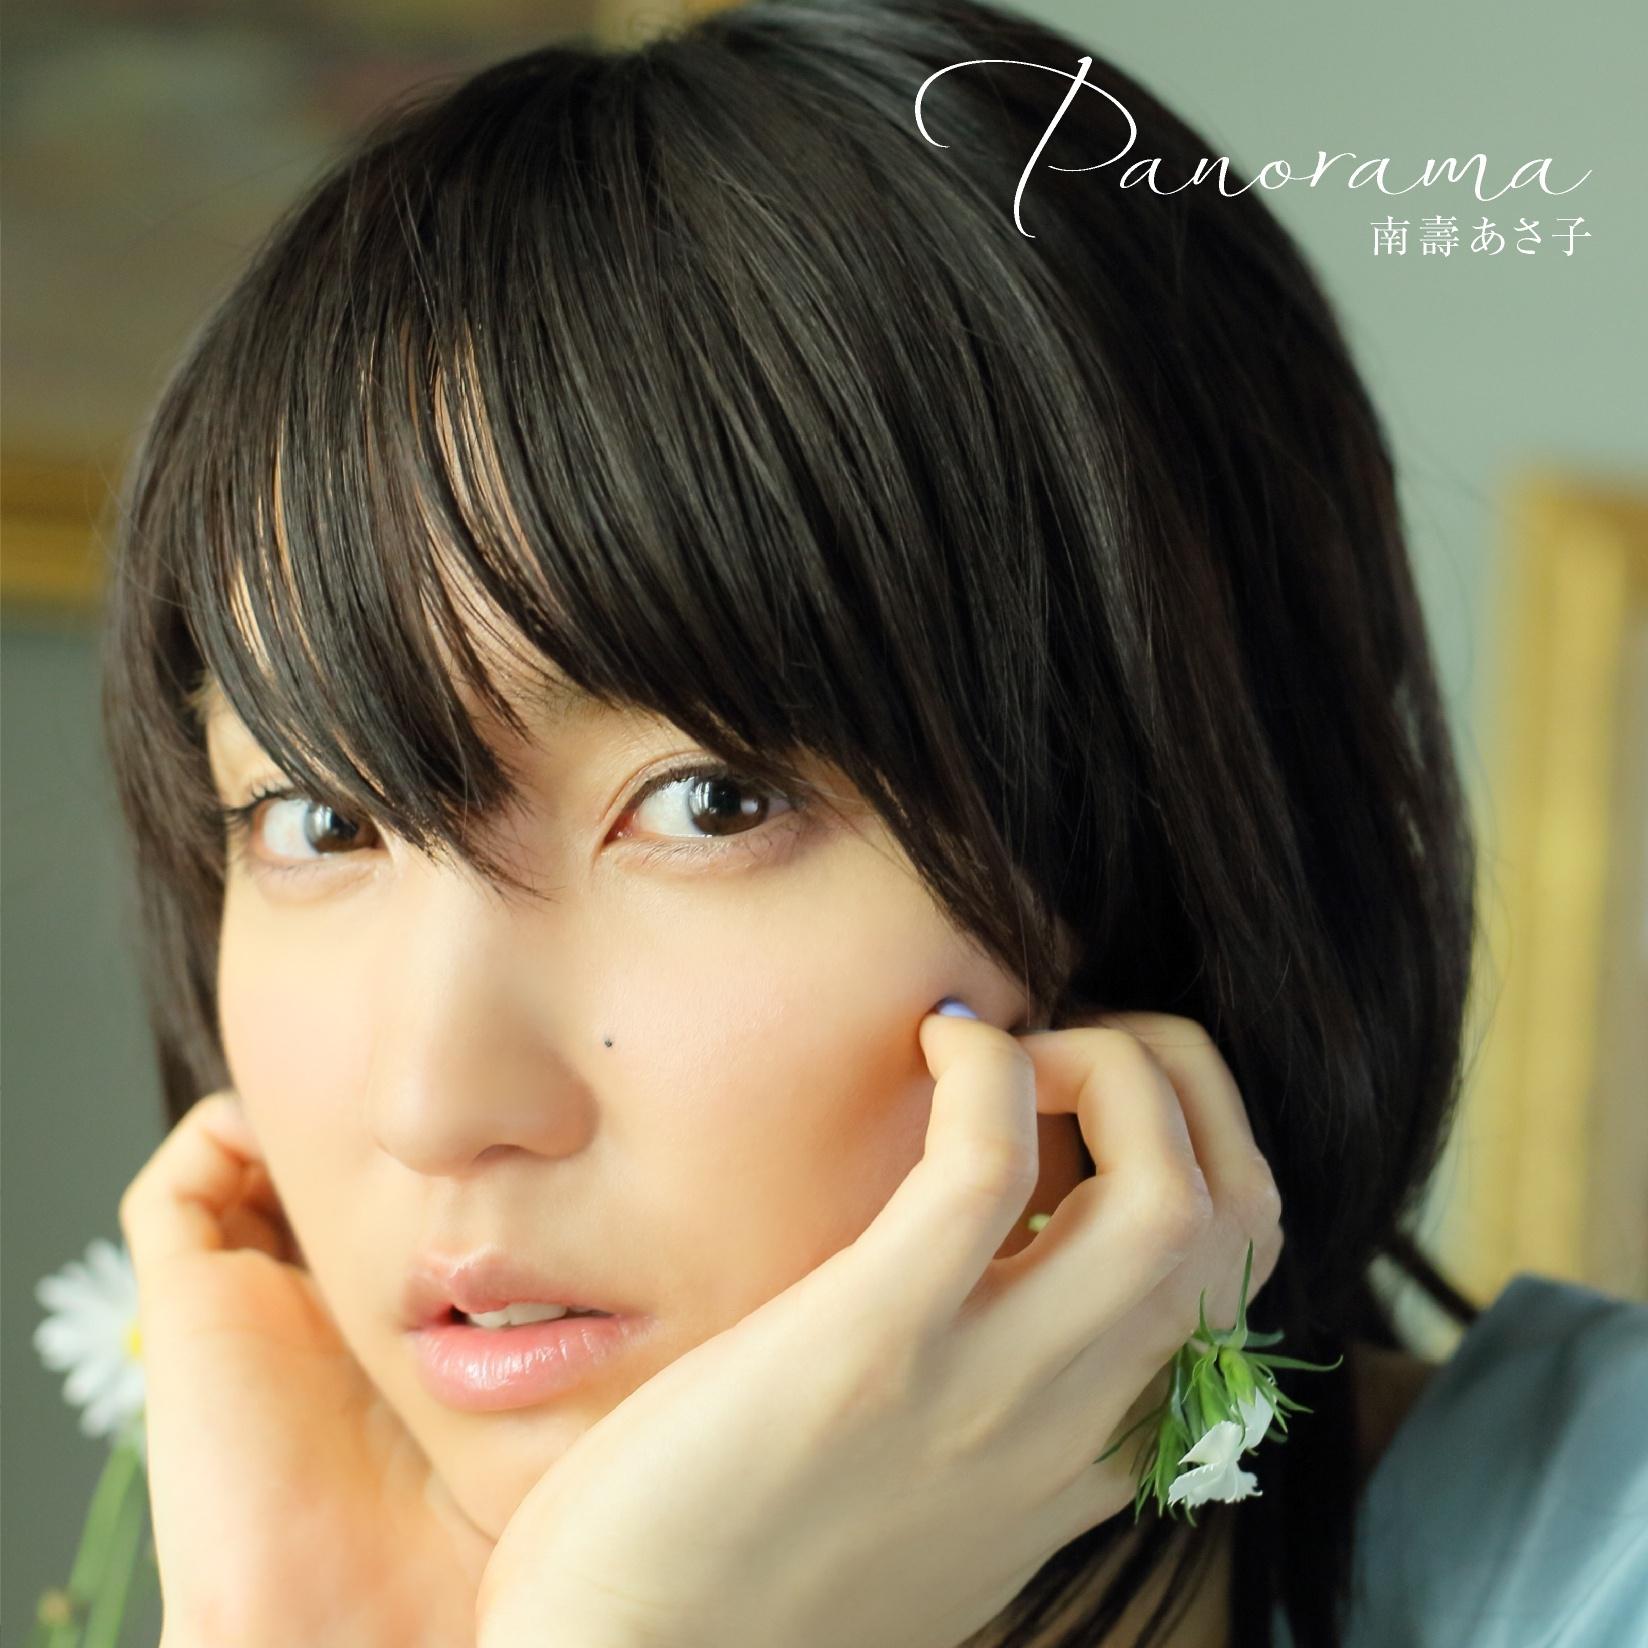 サンセット・サイドストーリー歌词 歌手南壽あさ子-专辑Panorama-单曲《サンセット・サイドストーリー》LRC歌词下载